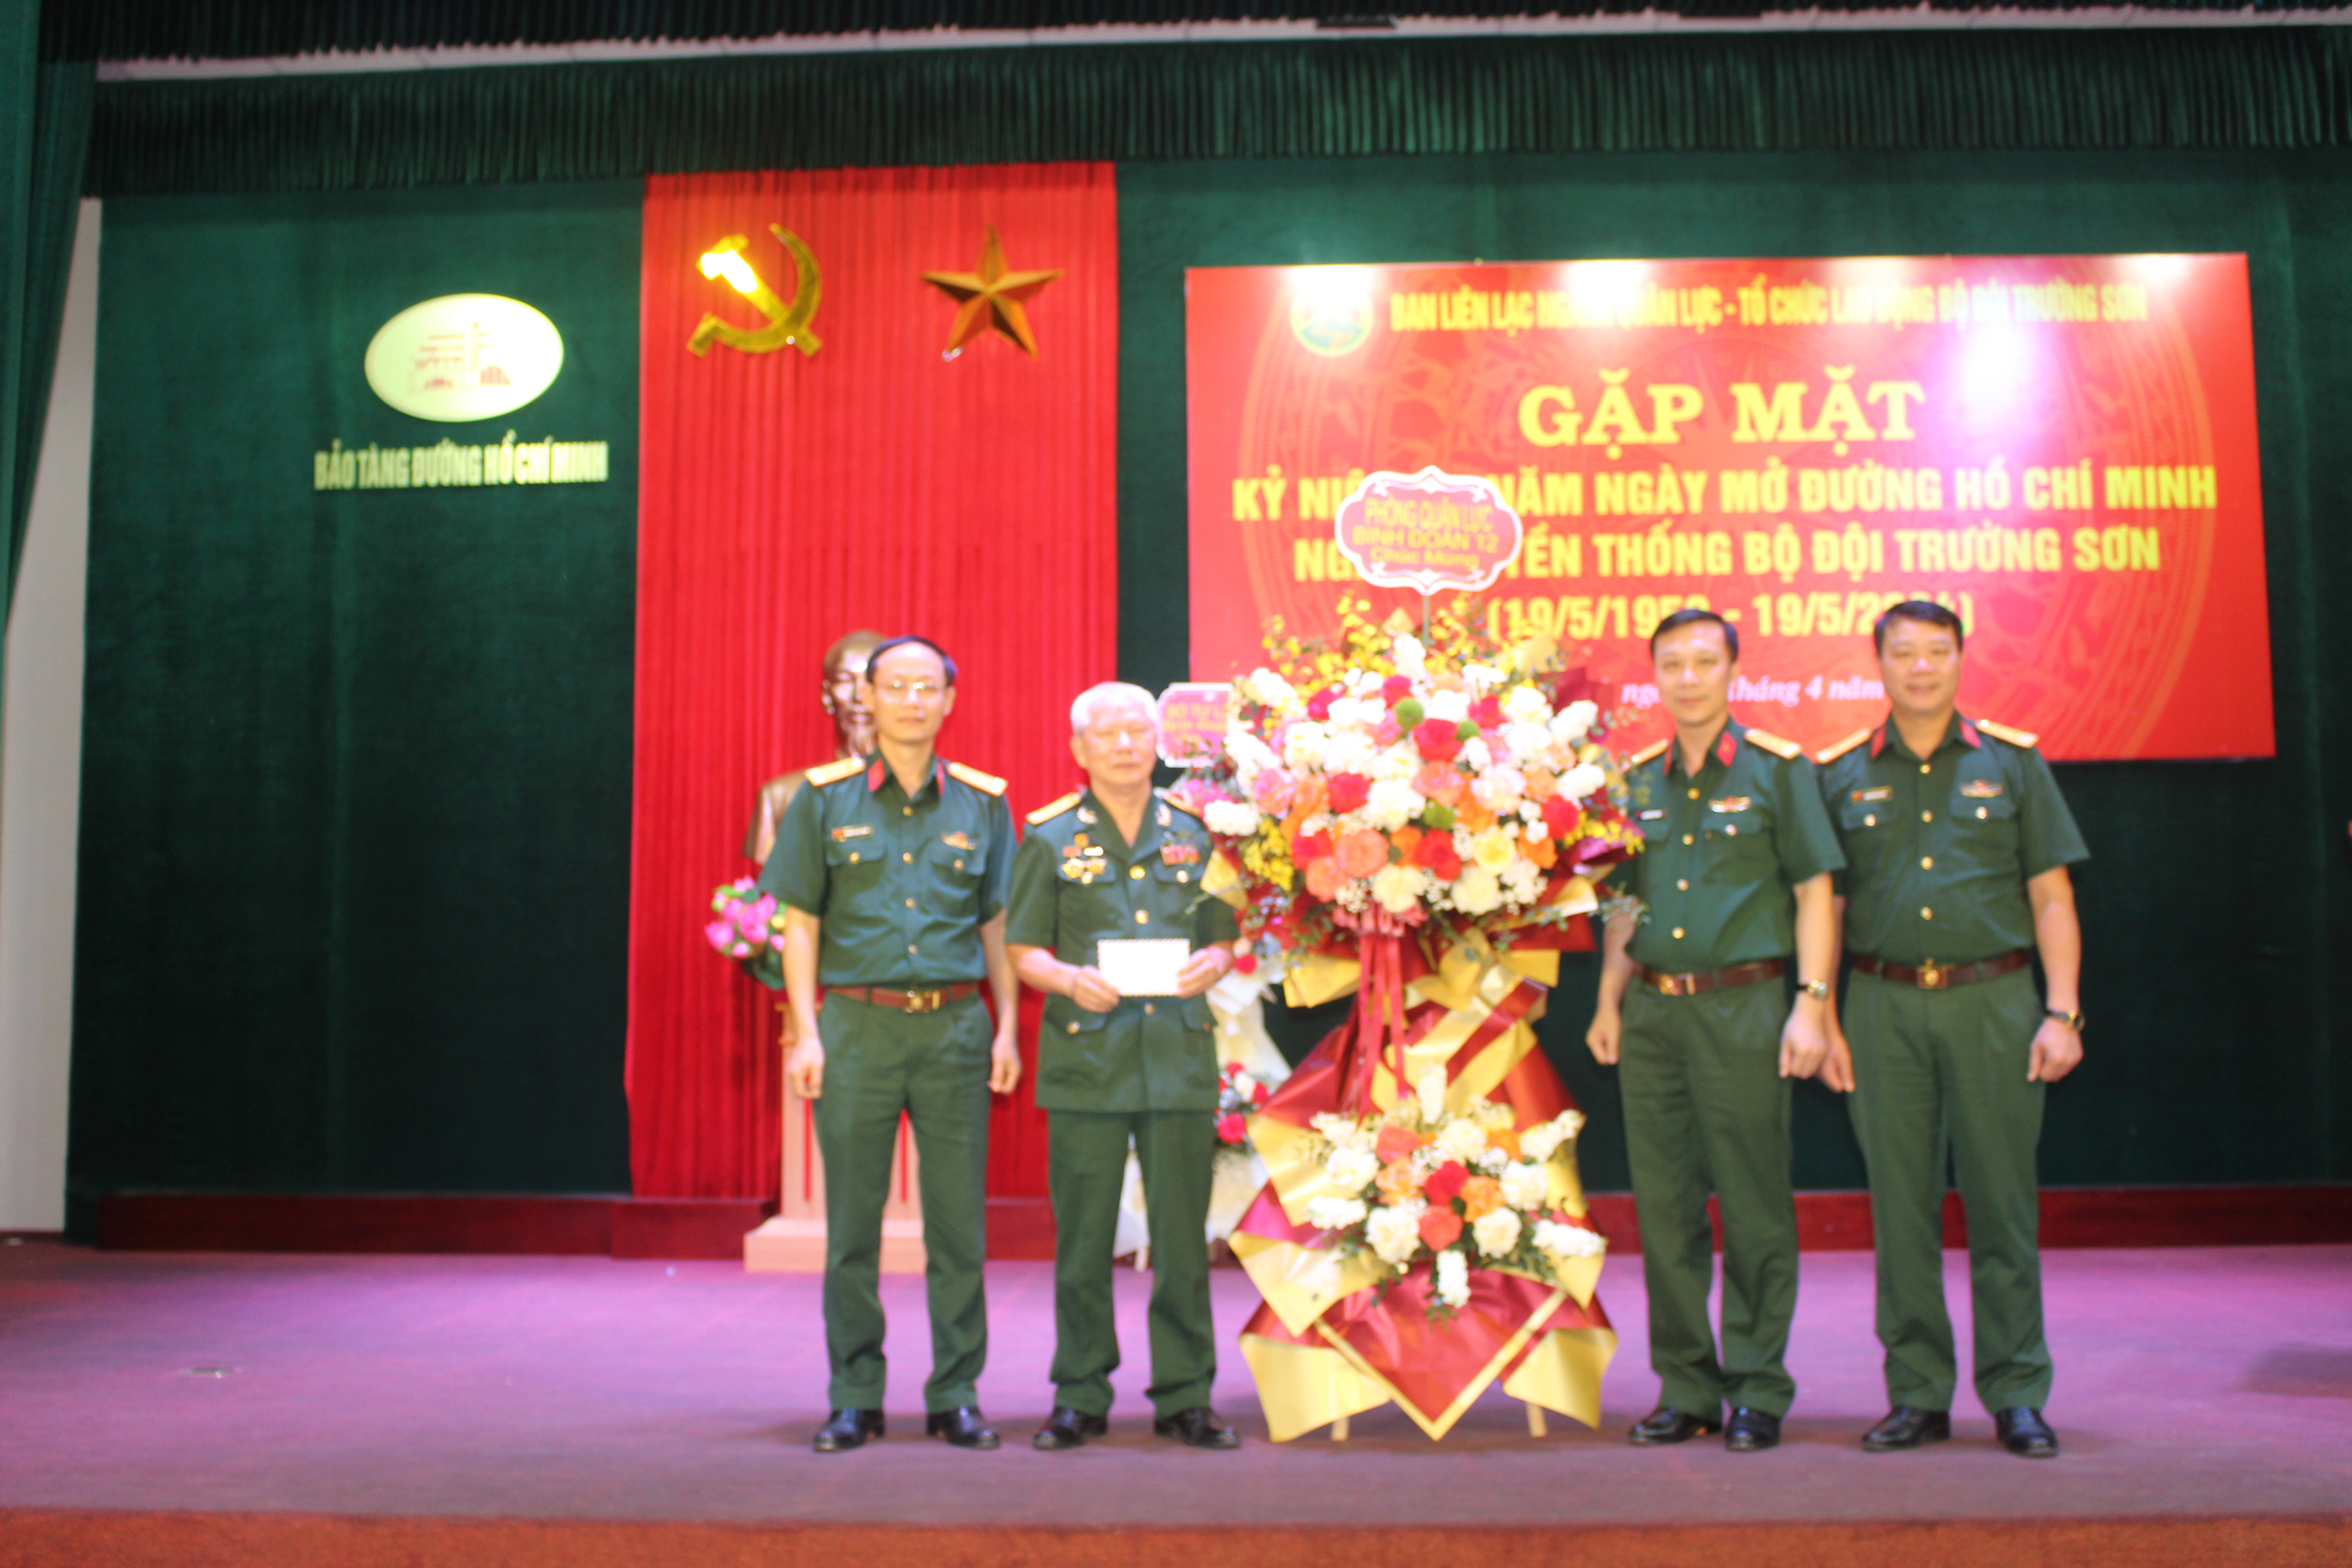 Ban liên lạc ngành Quân lực-Tổ chức lao động Bộ đội Trường Sơn, gặp mặt kỉ niệm 65 năm ngày mở đường Hồ Chí Minh-ngày truyền thống Bộ đội Trường Sơn.